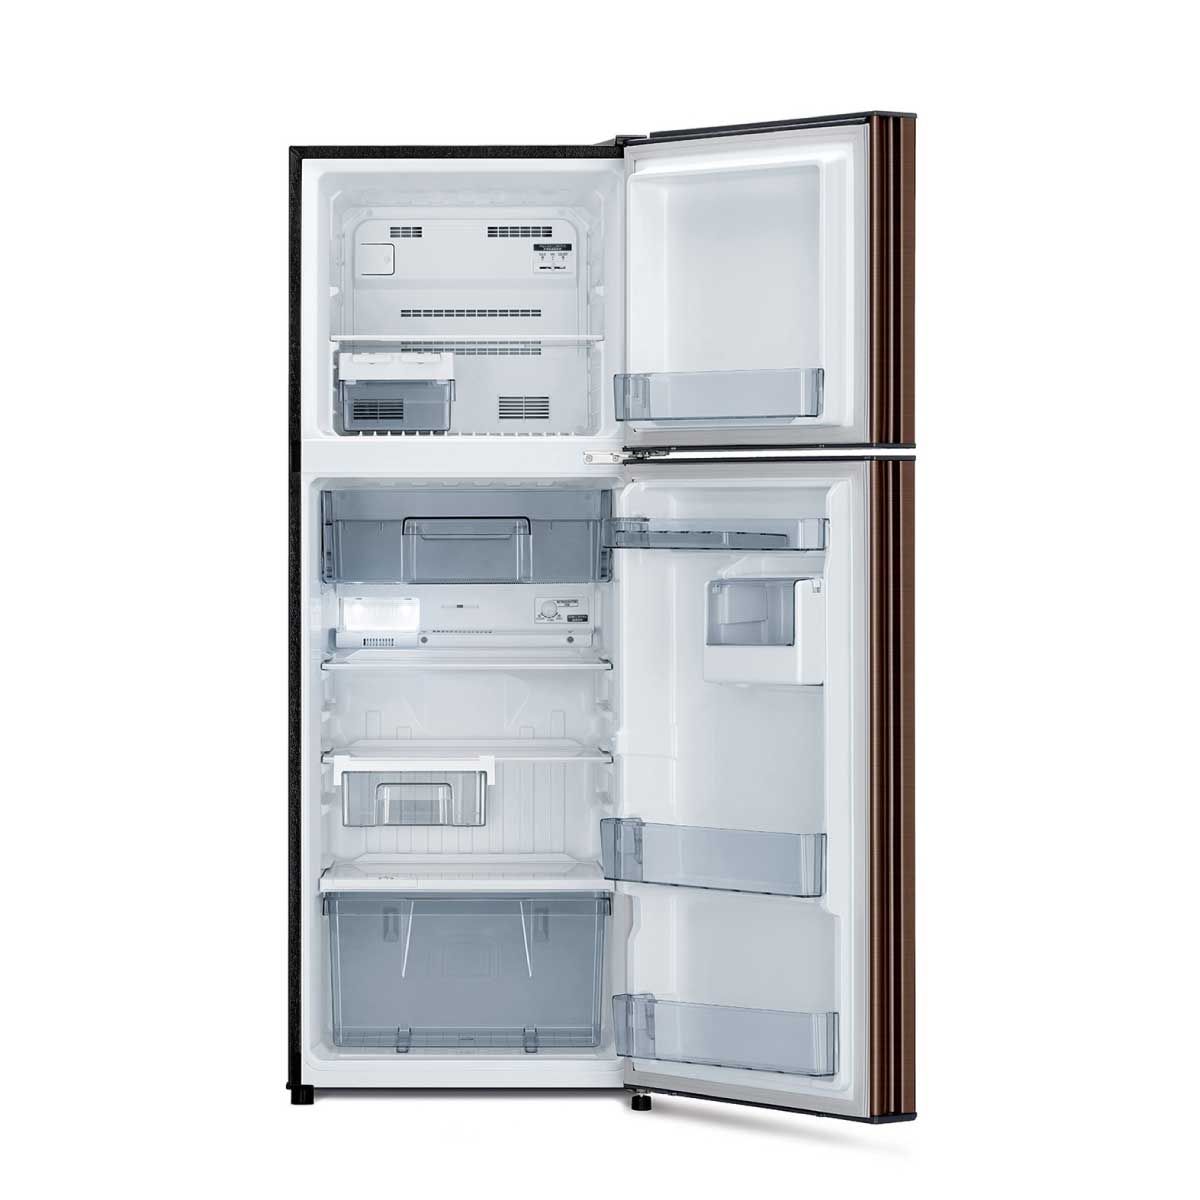 MITSUBISHI ELECTRIC ตู้เย็น2ประตู8.6คิว สีน้ำตาล รุ่น MR-FC26ET